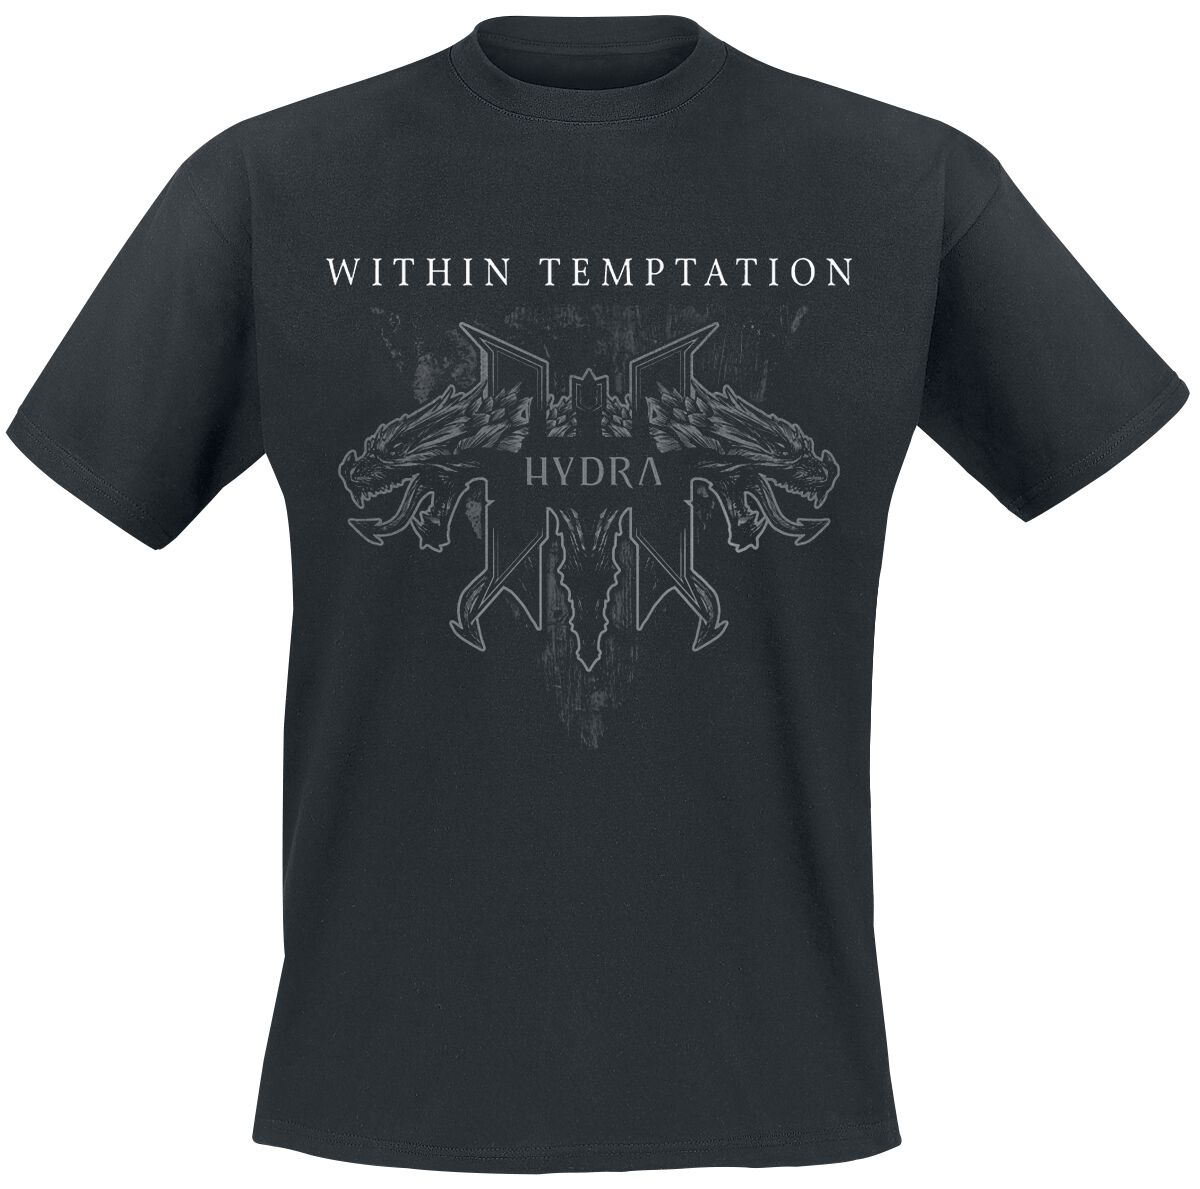 Within Temptation T-Shirt - Hydra Tracks - S bis XXL - für Männer - Größe L - schwarz  - Lizenziertes Merchandise!